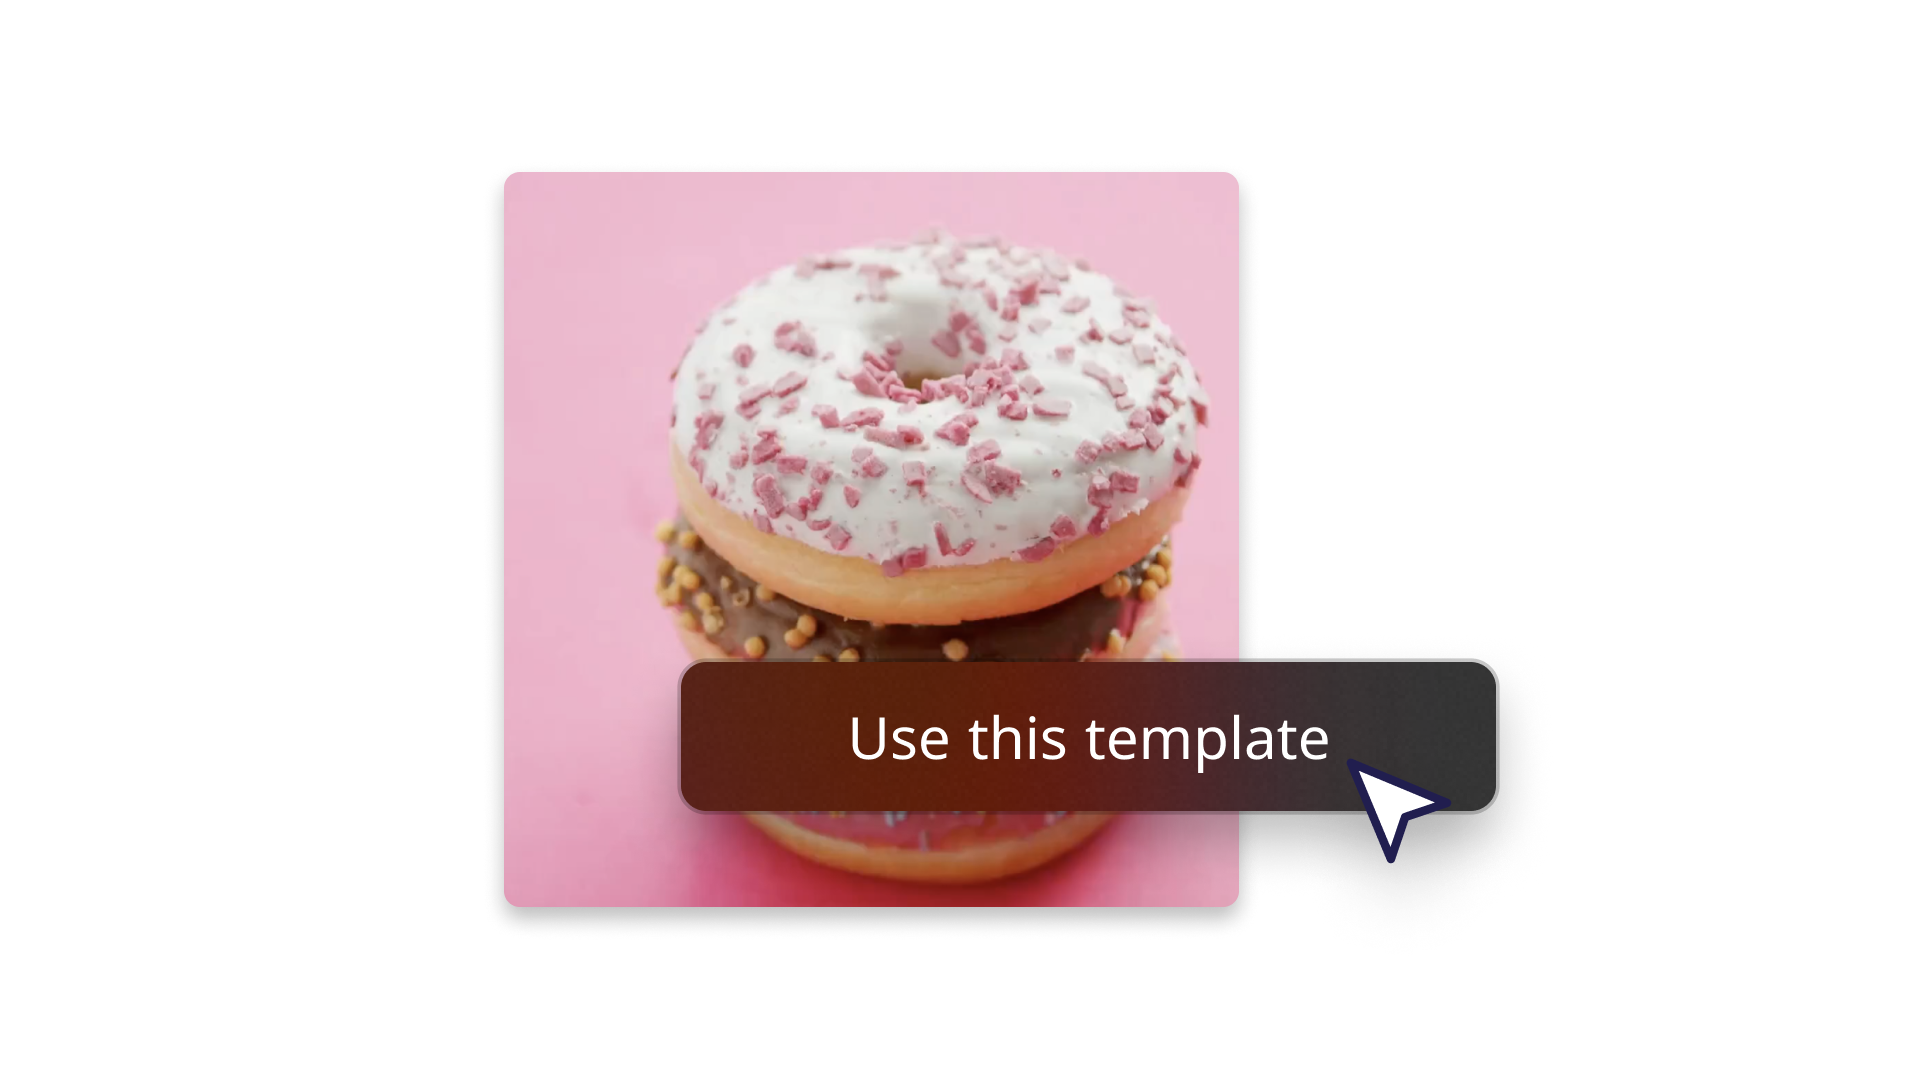 템플릿 사용 방법을 보여주는 도넛이 있는 추상 이미지 